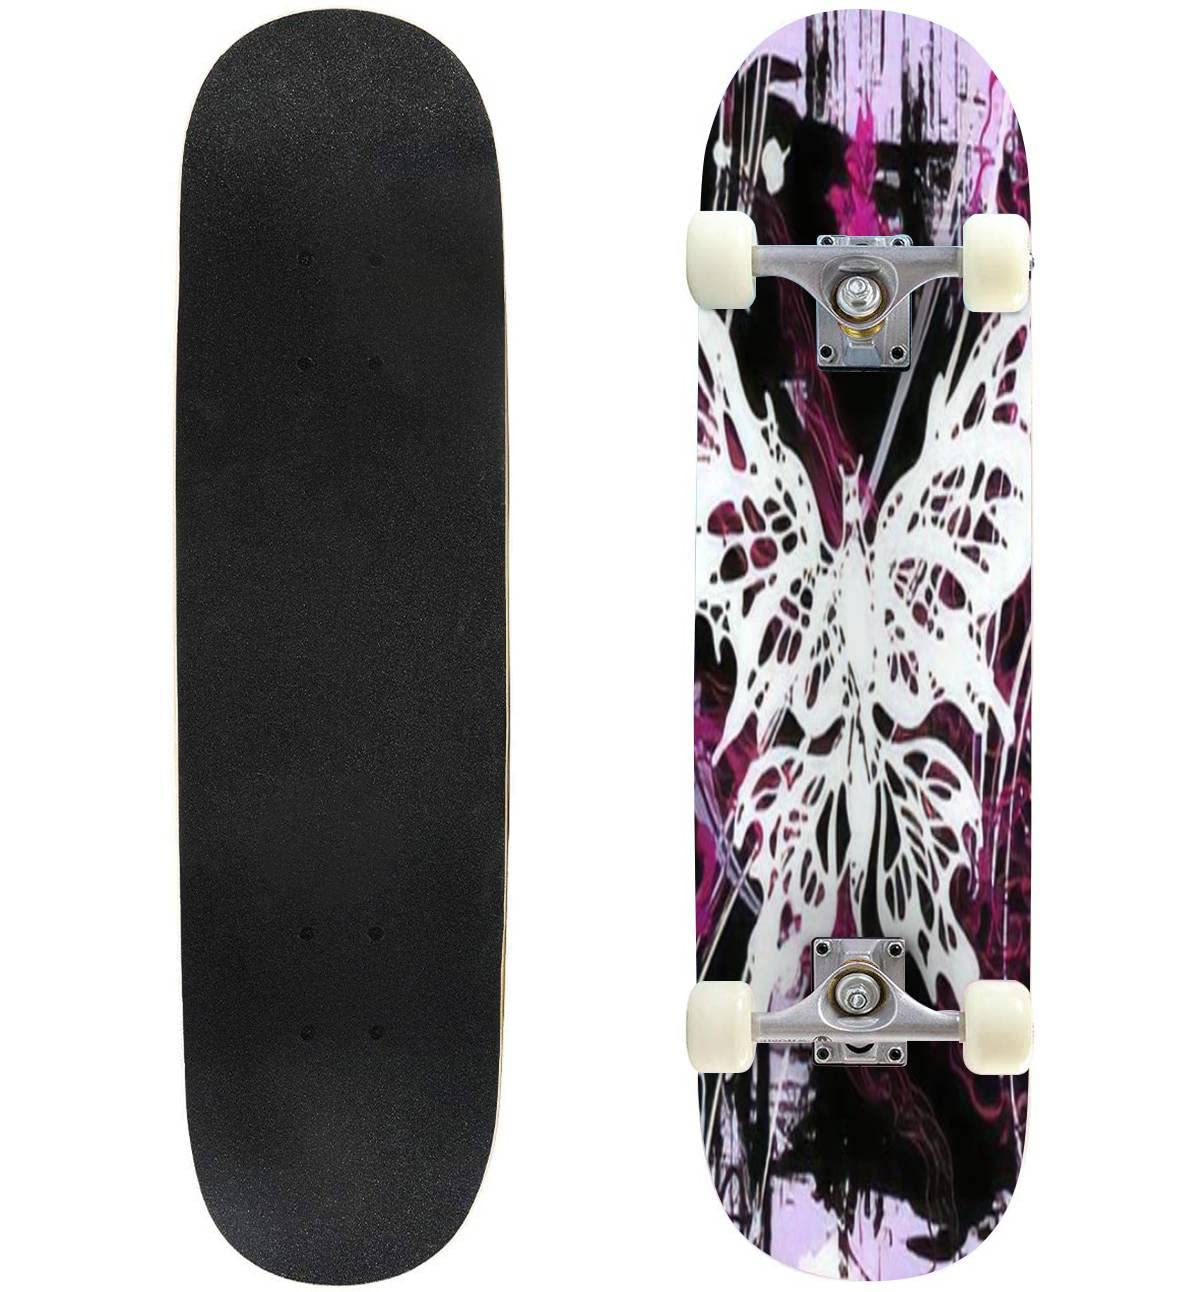 送料無料Classic Concave Skateboard pictorial Grunge with White and Pink Butterflies and Flowers See jpg Longboard Standar